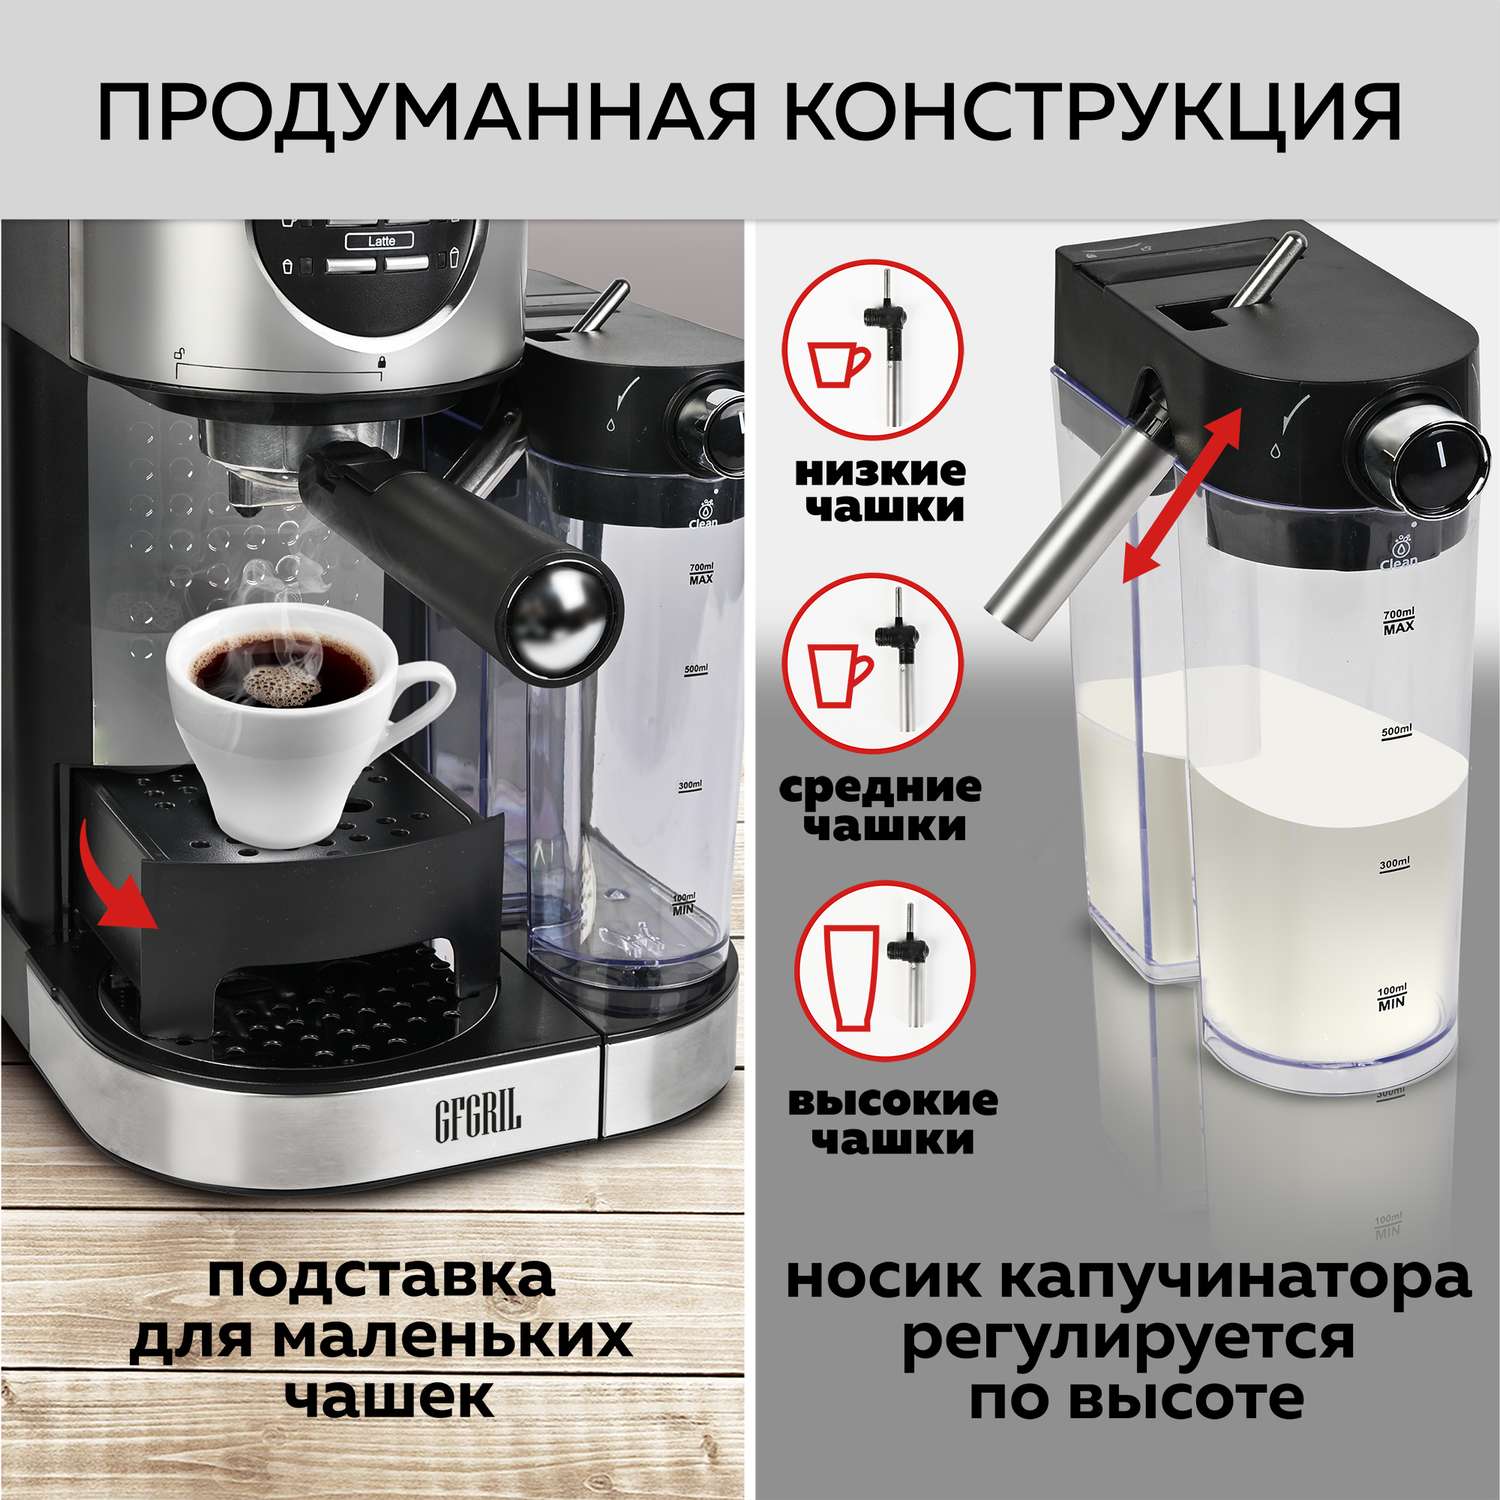 Кофеварка GFGRIL С автоматическим капучинатором 3 в 1 GFC-A300 Эспрессо-Капучино-Латте - фото 7